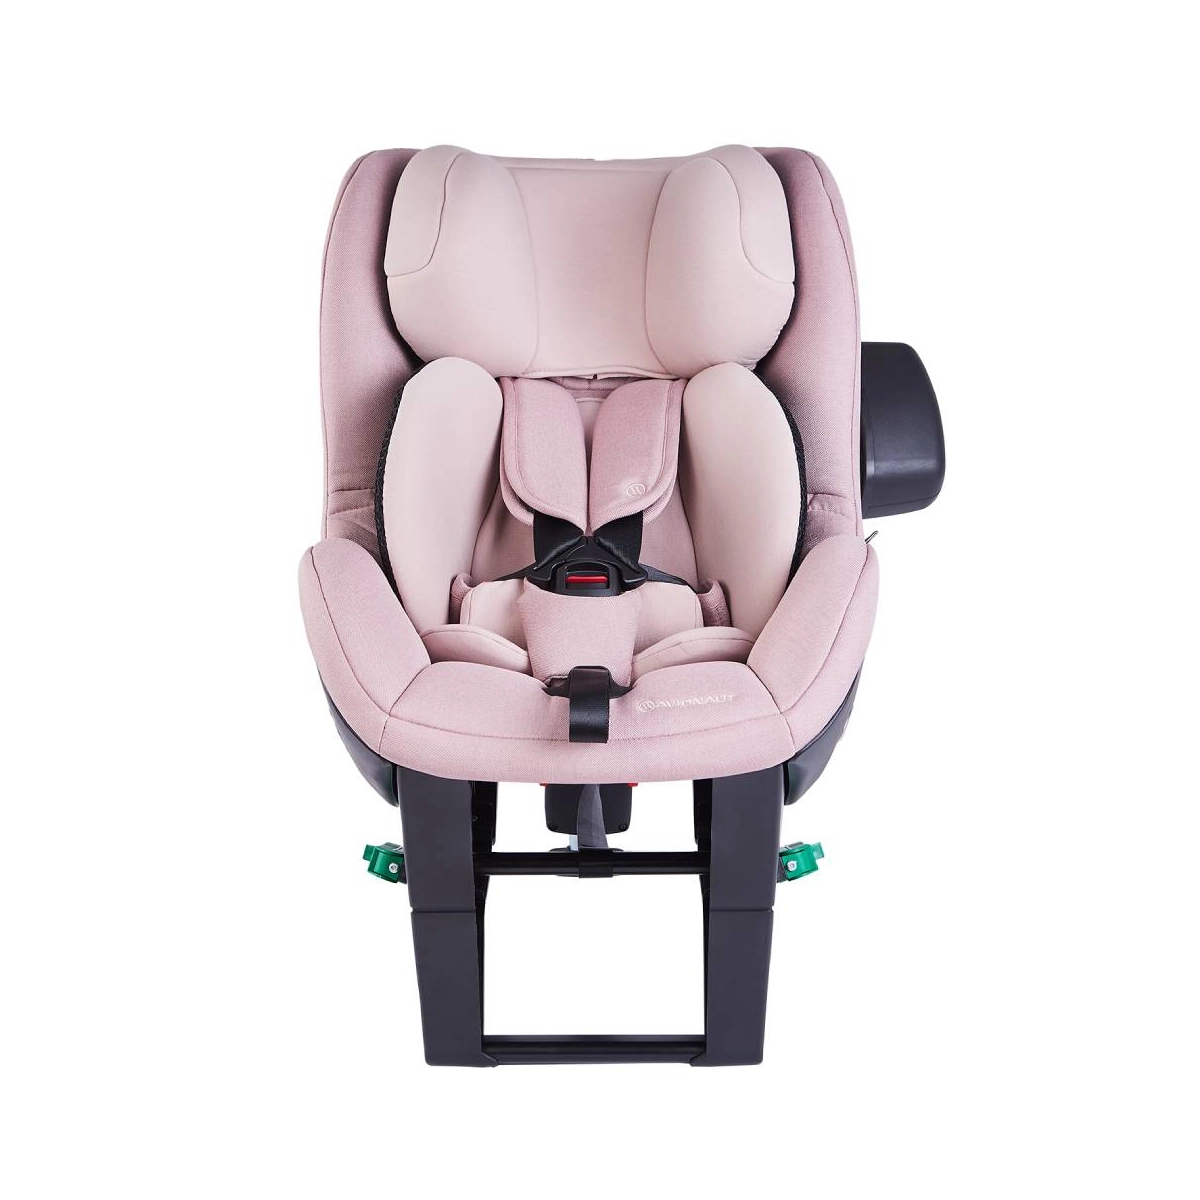 Avionaut Sky 2.0 Car Seat – Pink